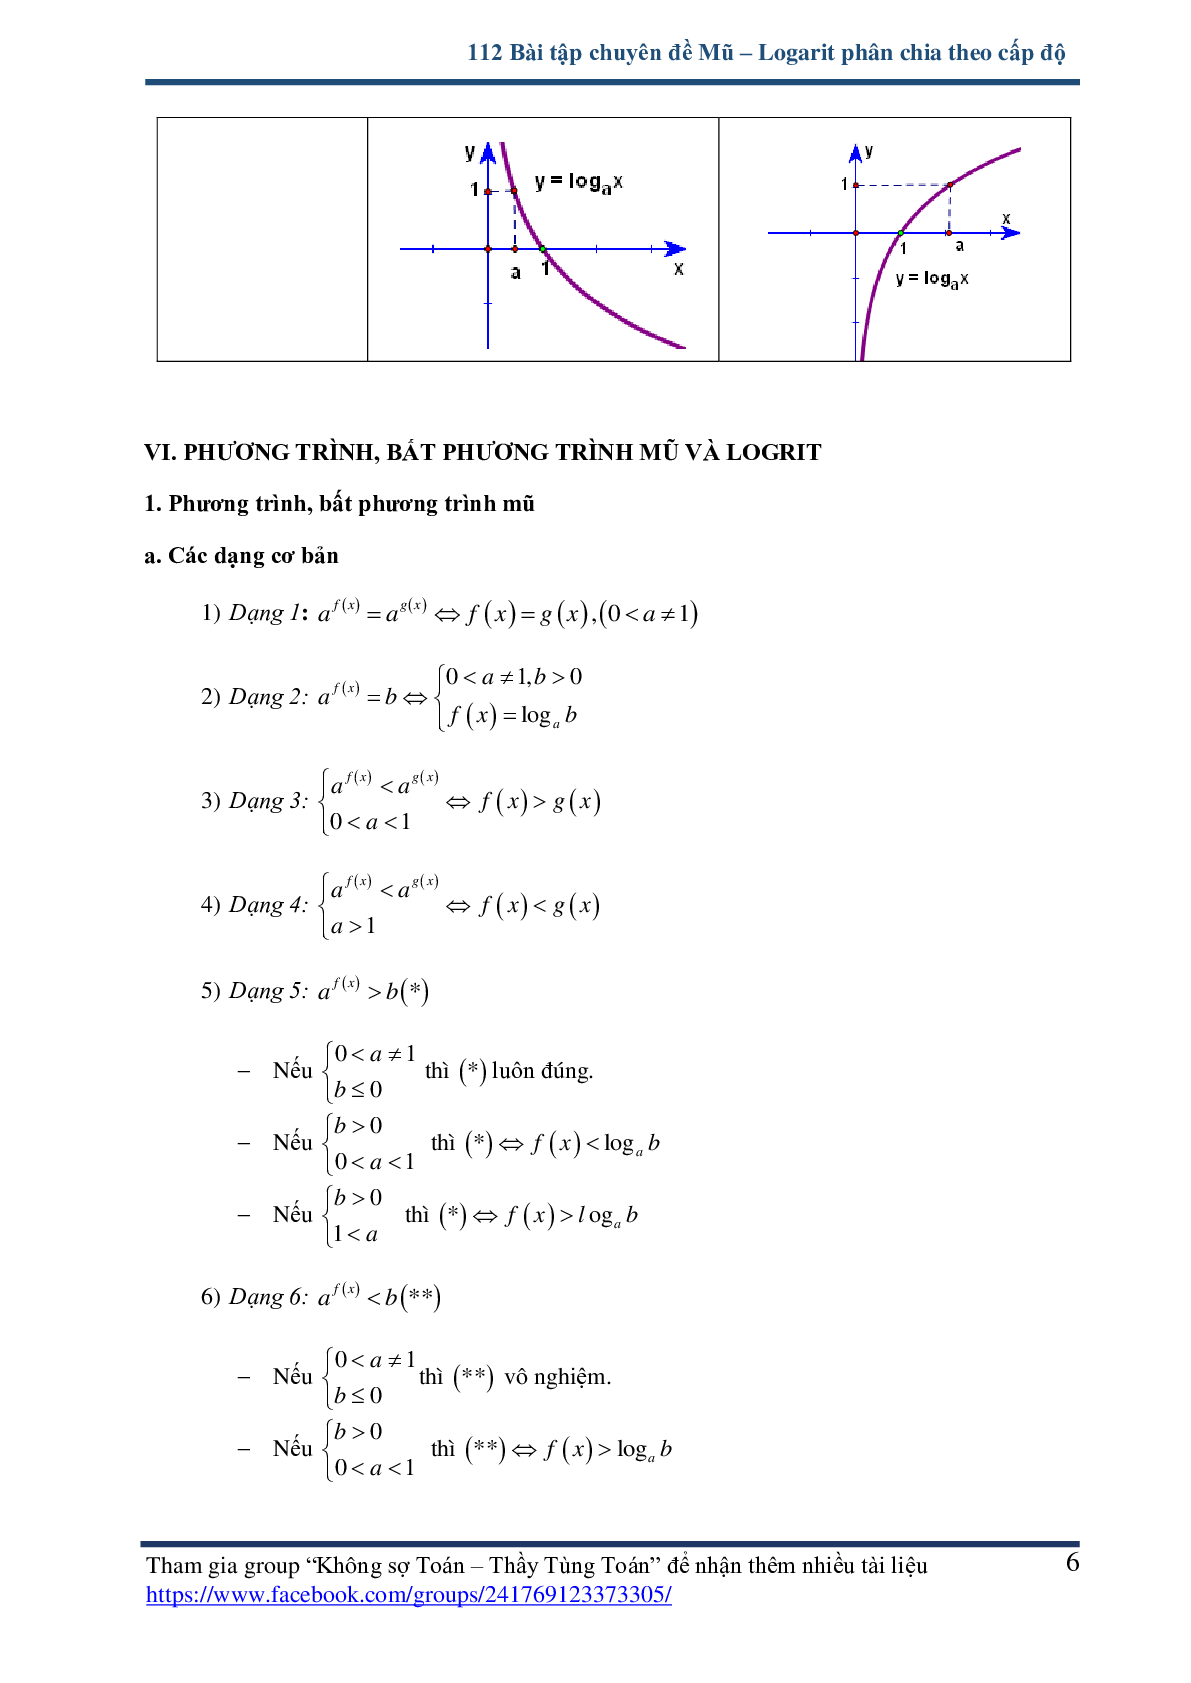 112 bài tập chuyên đề mũ và logarit - có lời giải chi tiết (trang 6)